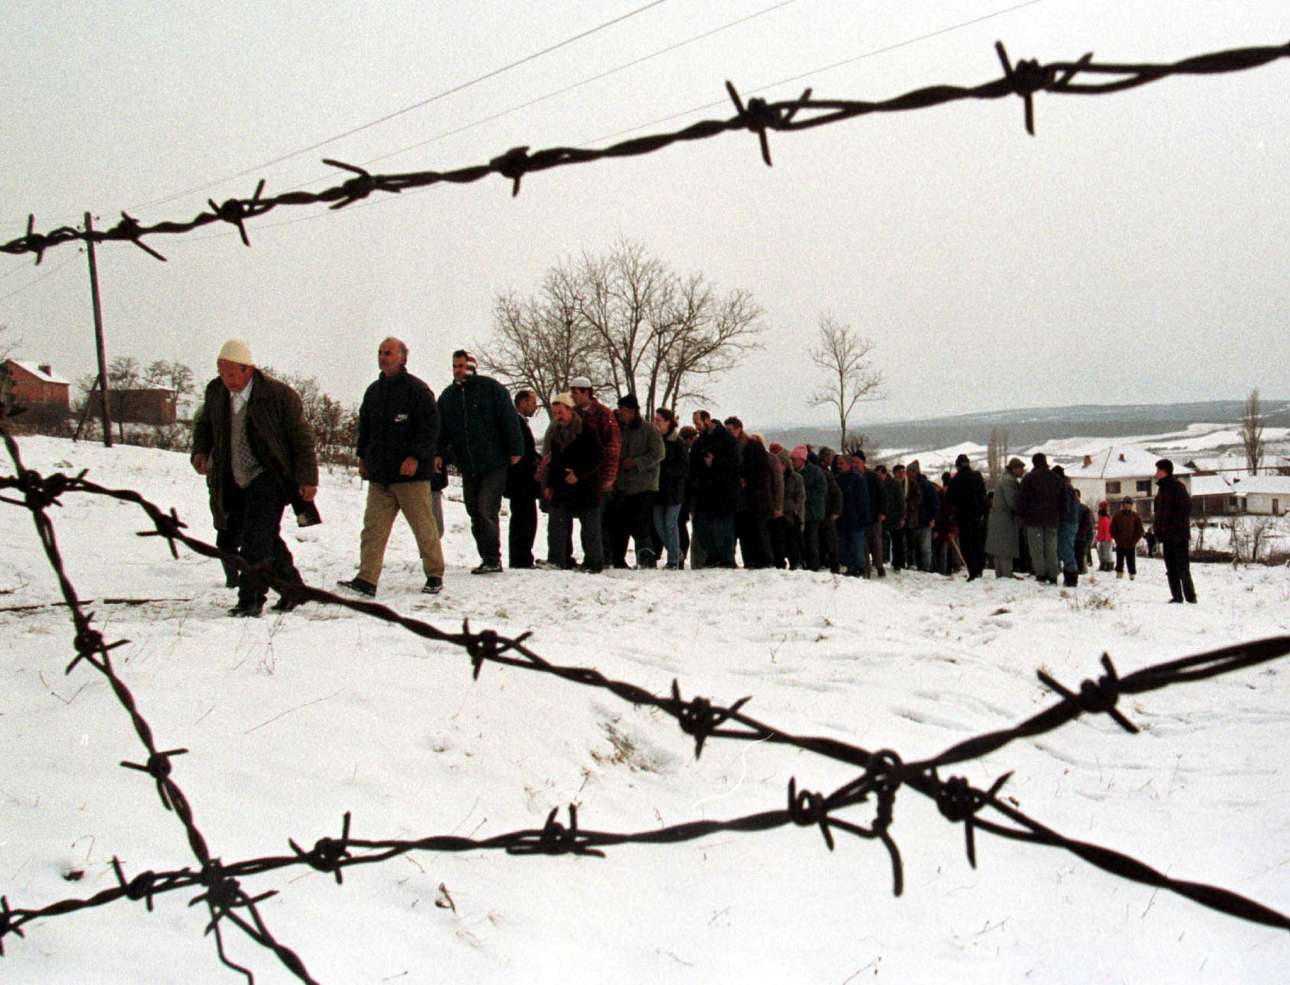 Μια προσευχή και αποχαιρετισμός για δύο Αλβανούς, θύματα των εθνοτικών συγκρούσεων στο Κόσοβο τον Ιανουάριο του 1999